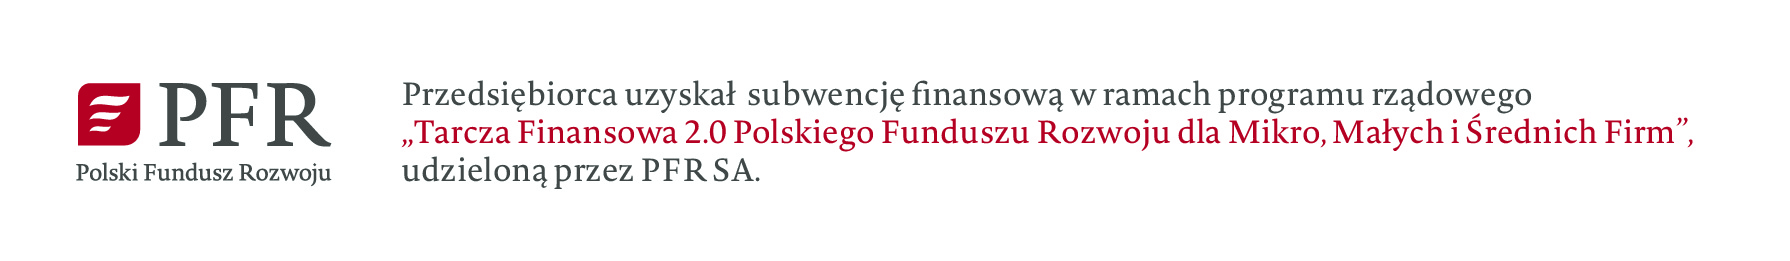 Tarcza Finansowa 2.0 Polskiego